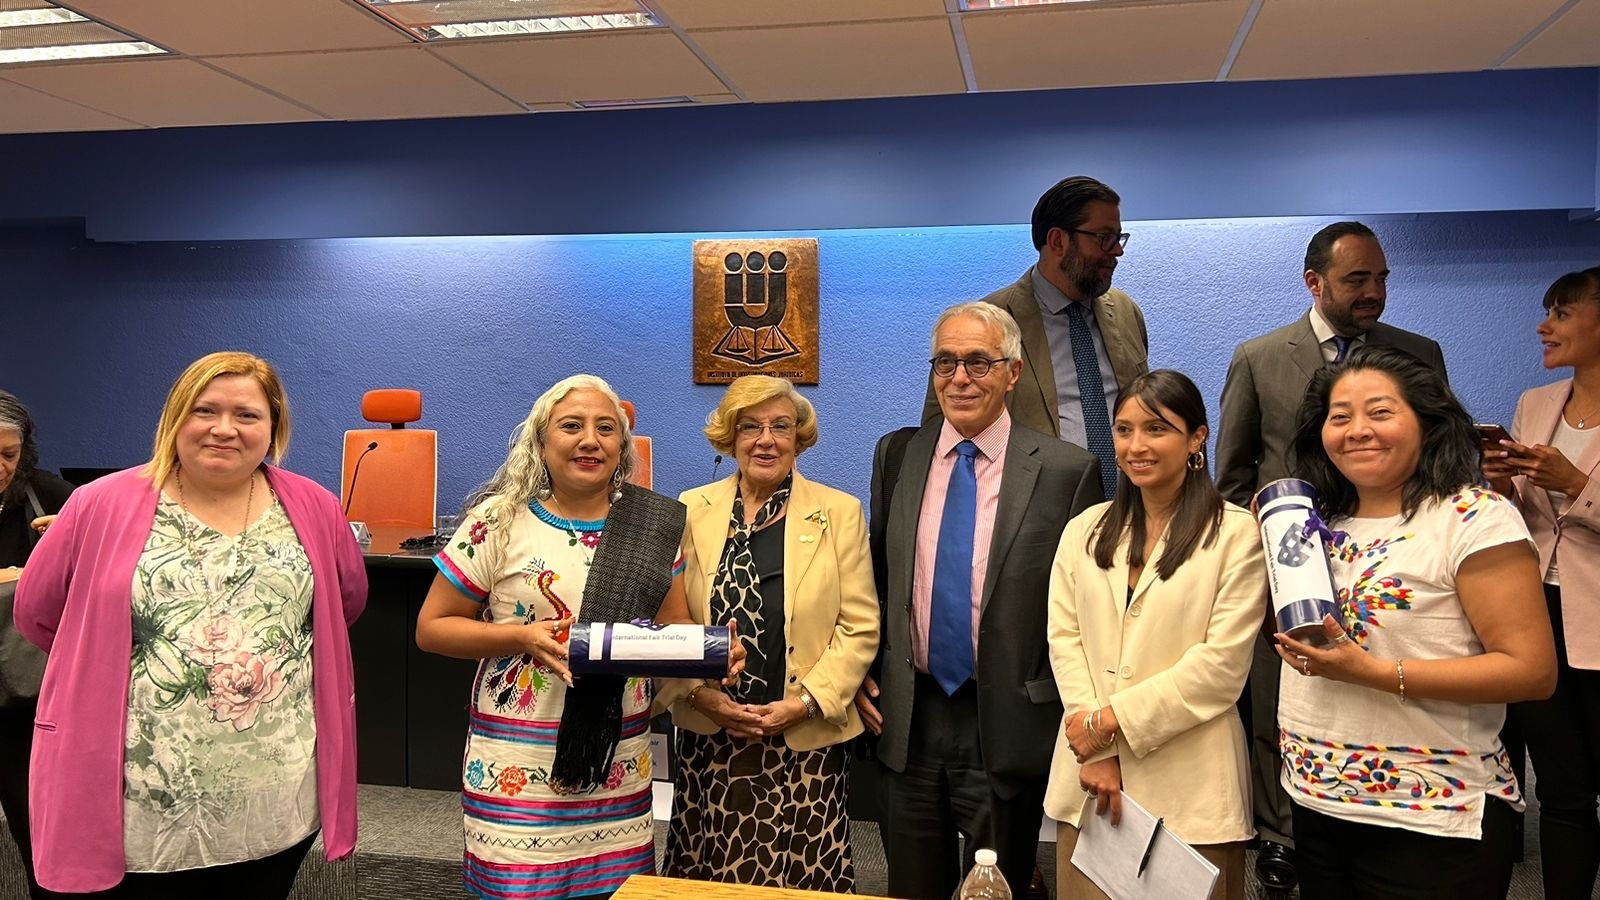 Consorcio Oaxaca recibe mención honorifica del premio Ebru Timtik en el marco del “Día Internacional del Juicio Justo”